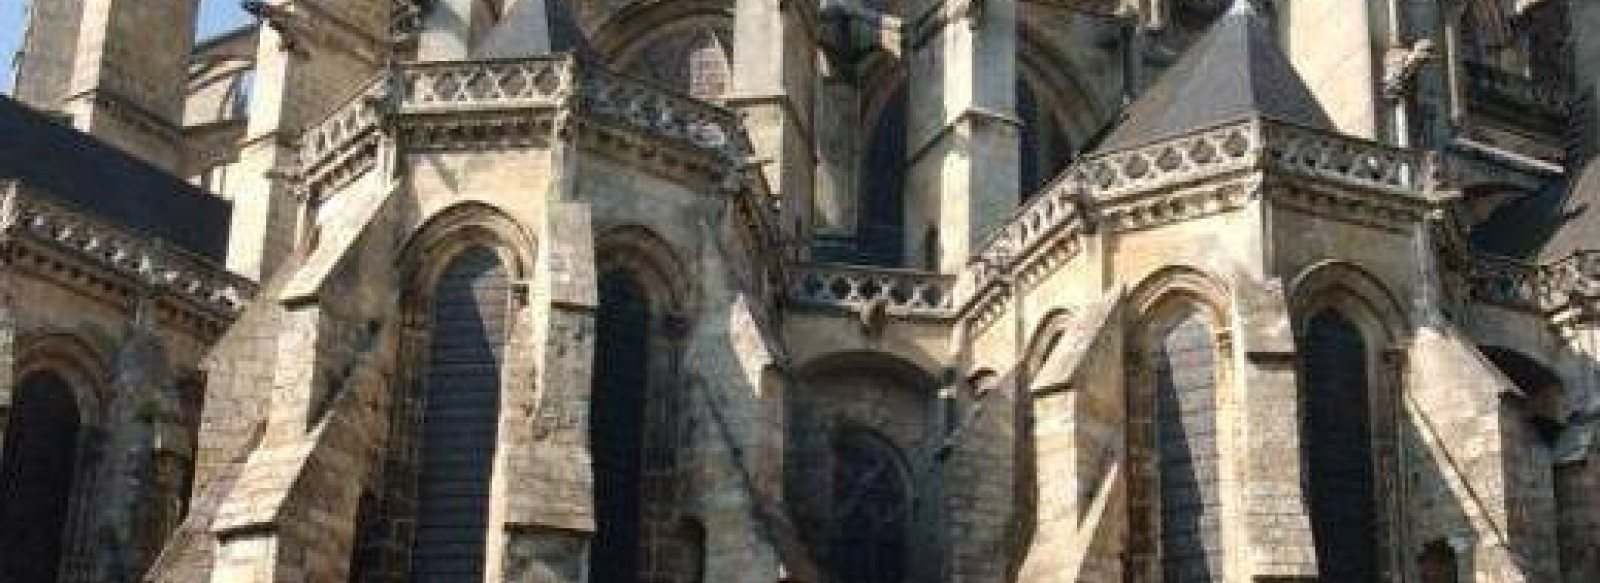 La cathedrale Saint-Julien